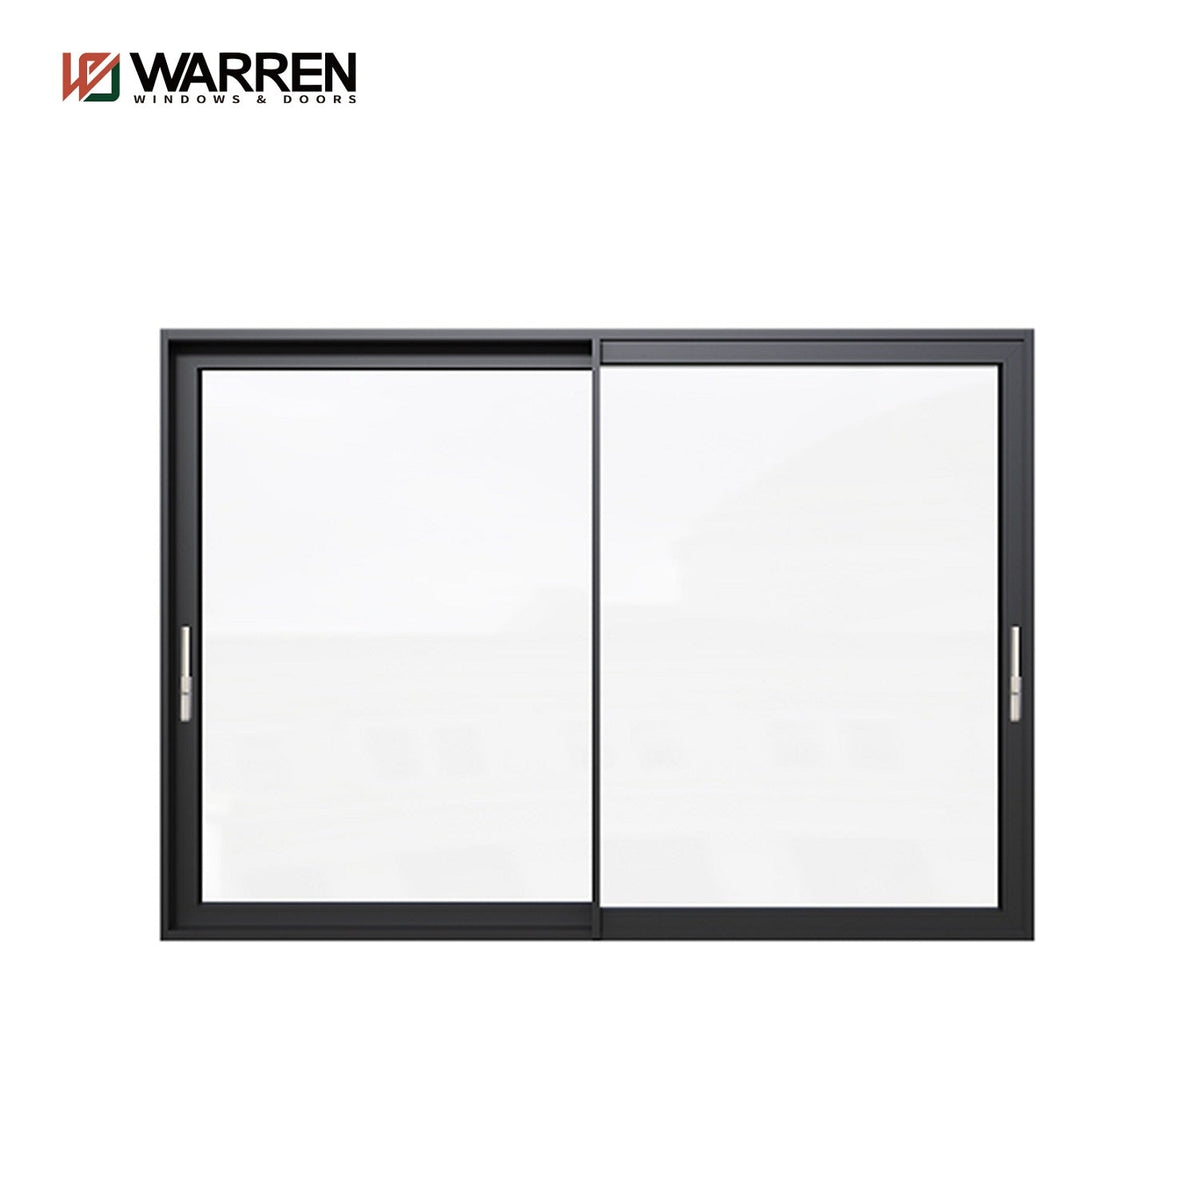 Warren black series 115*30 door aluminium sliding door integrative double glass for sale